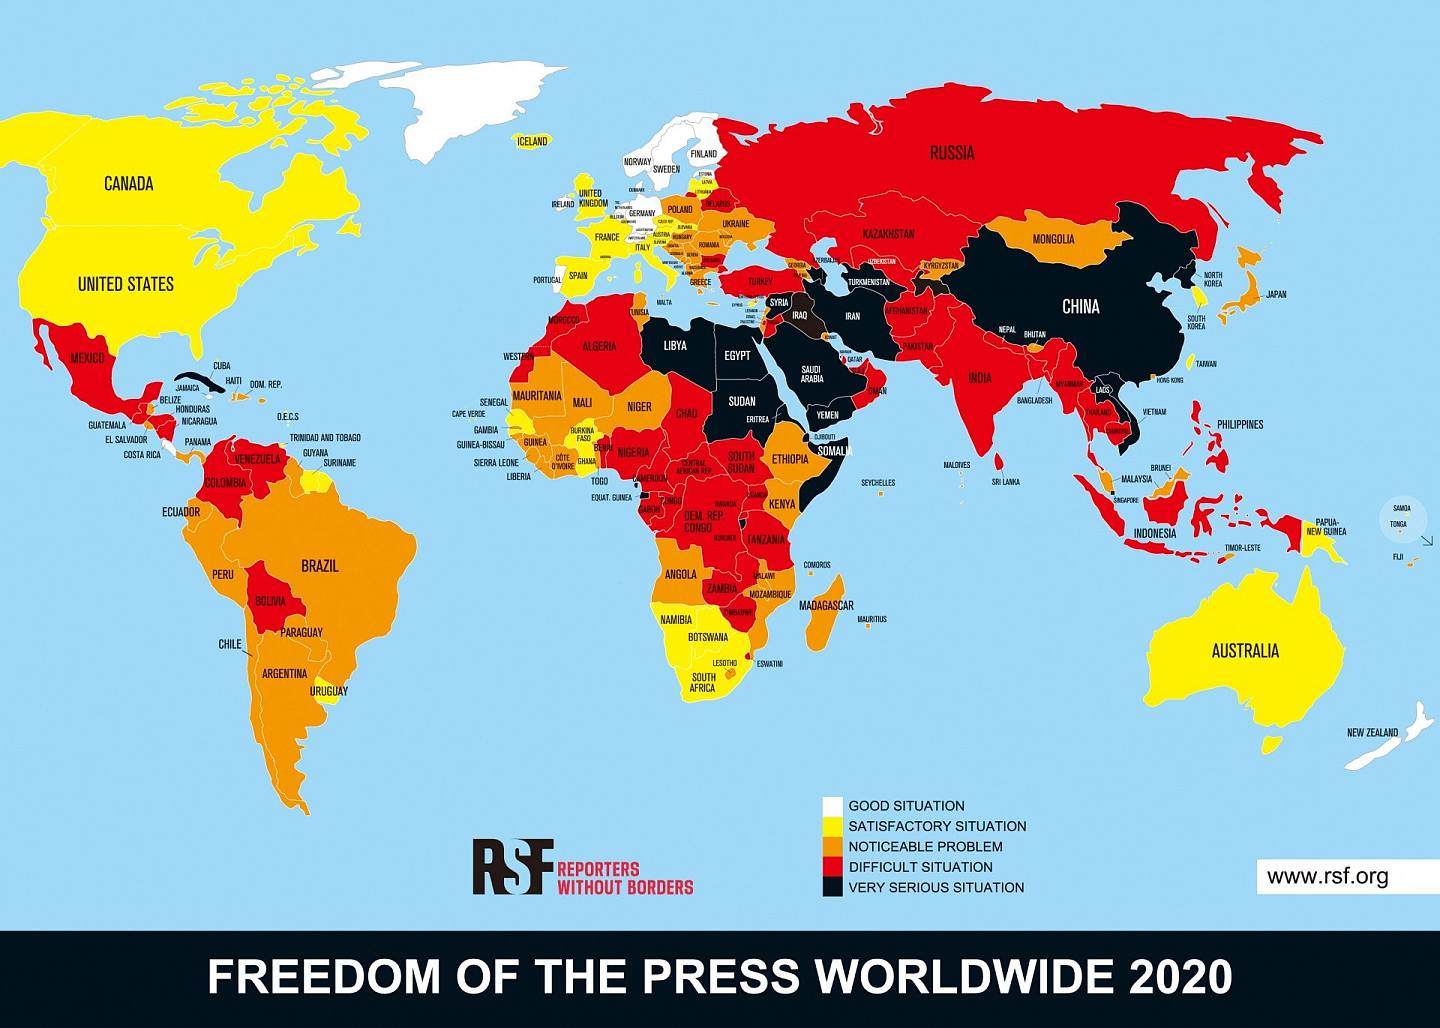 2020年世界新聞自由指數情況。（無國界記者組織提供）